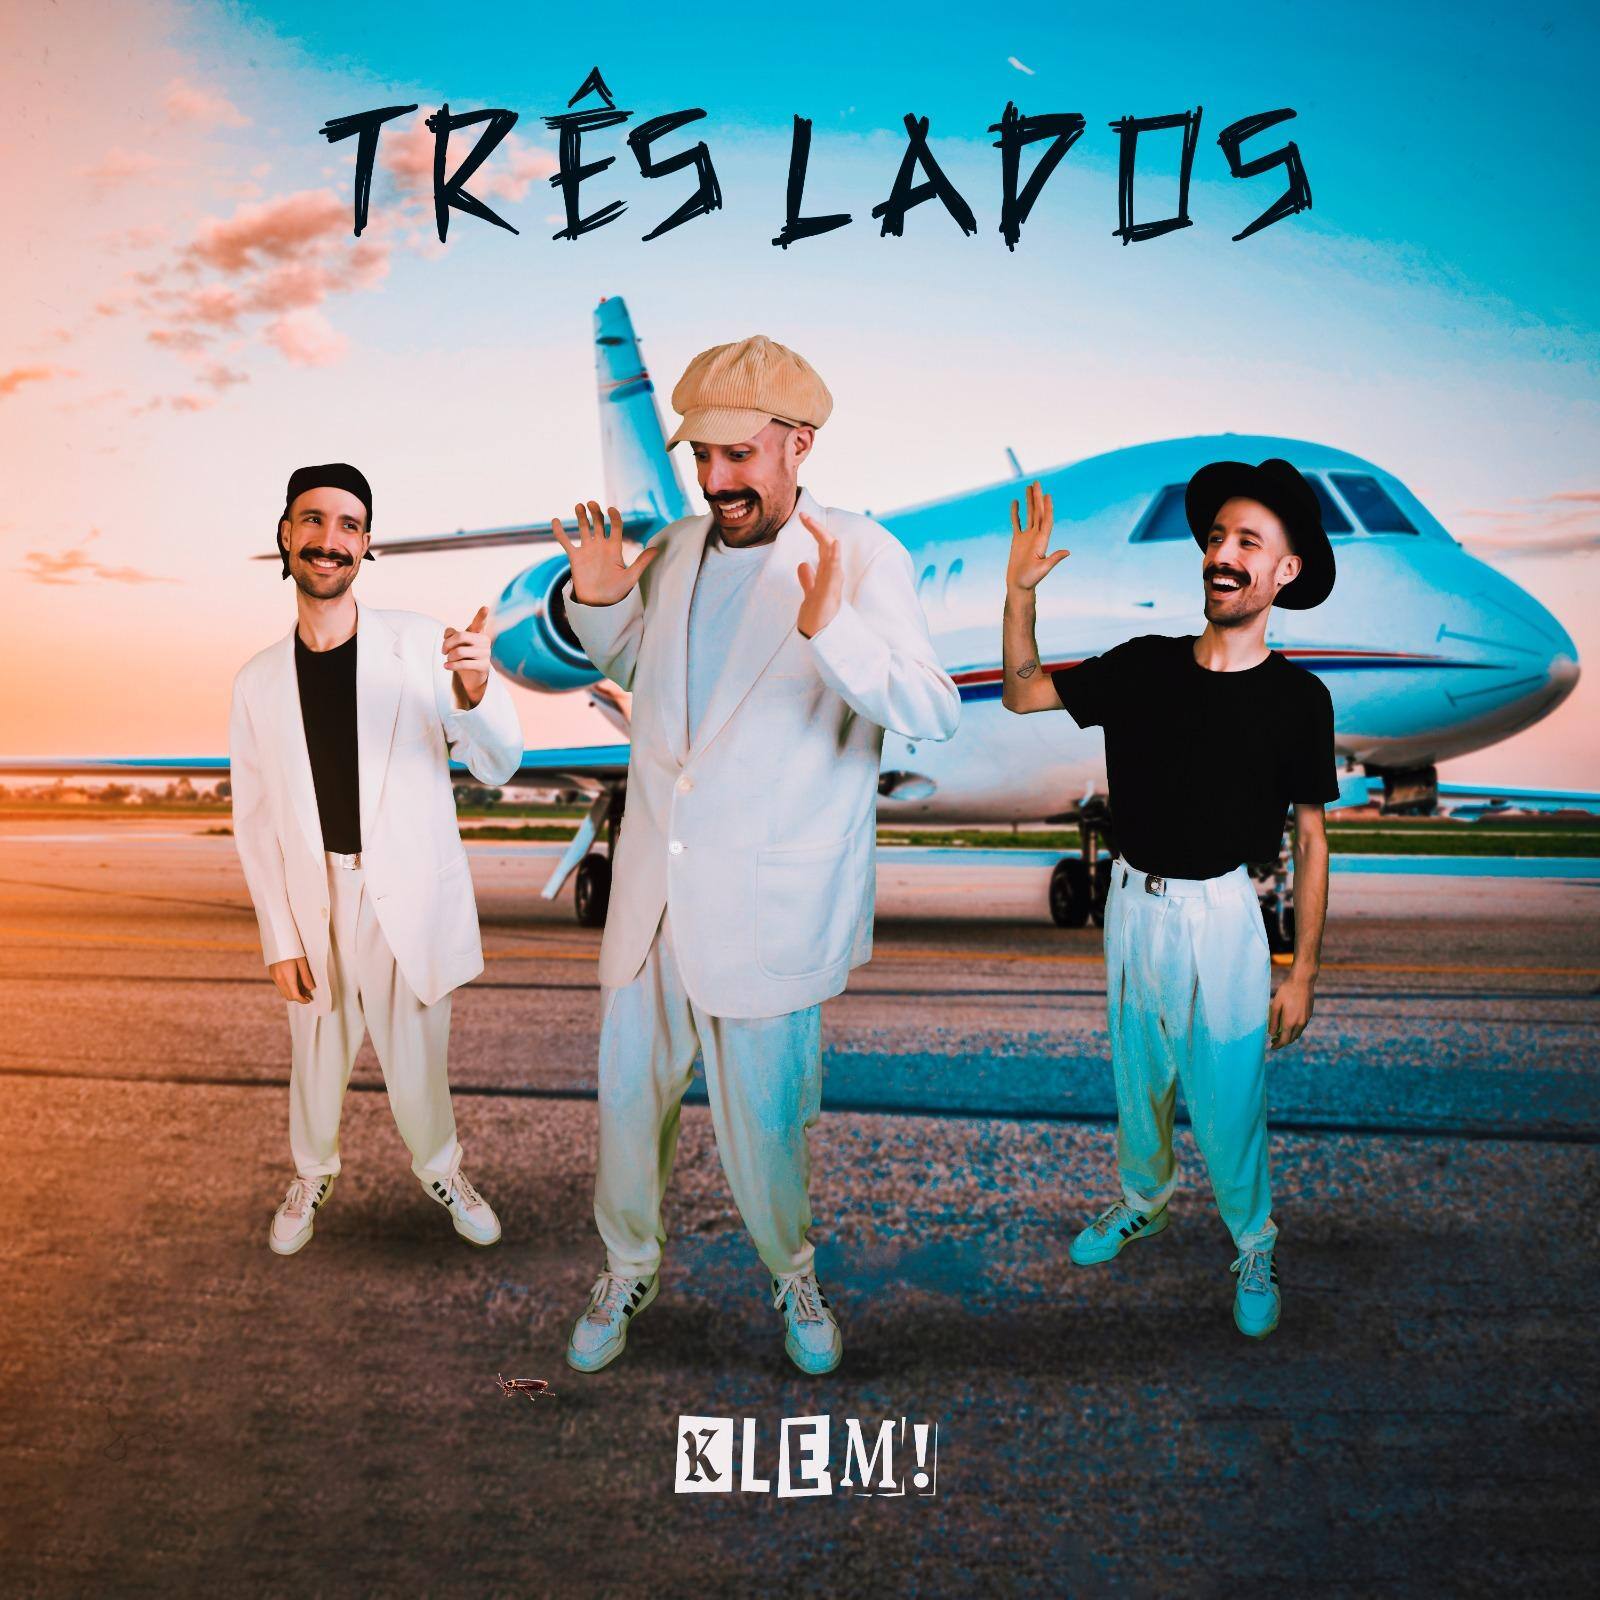 Músico mineiro KLEM! lança sua versão para a música 'Três Lados', hit da banda Skank